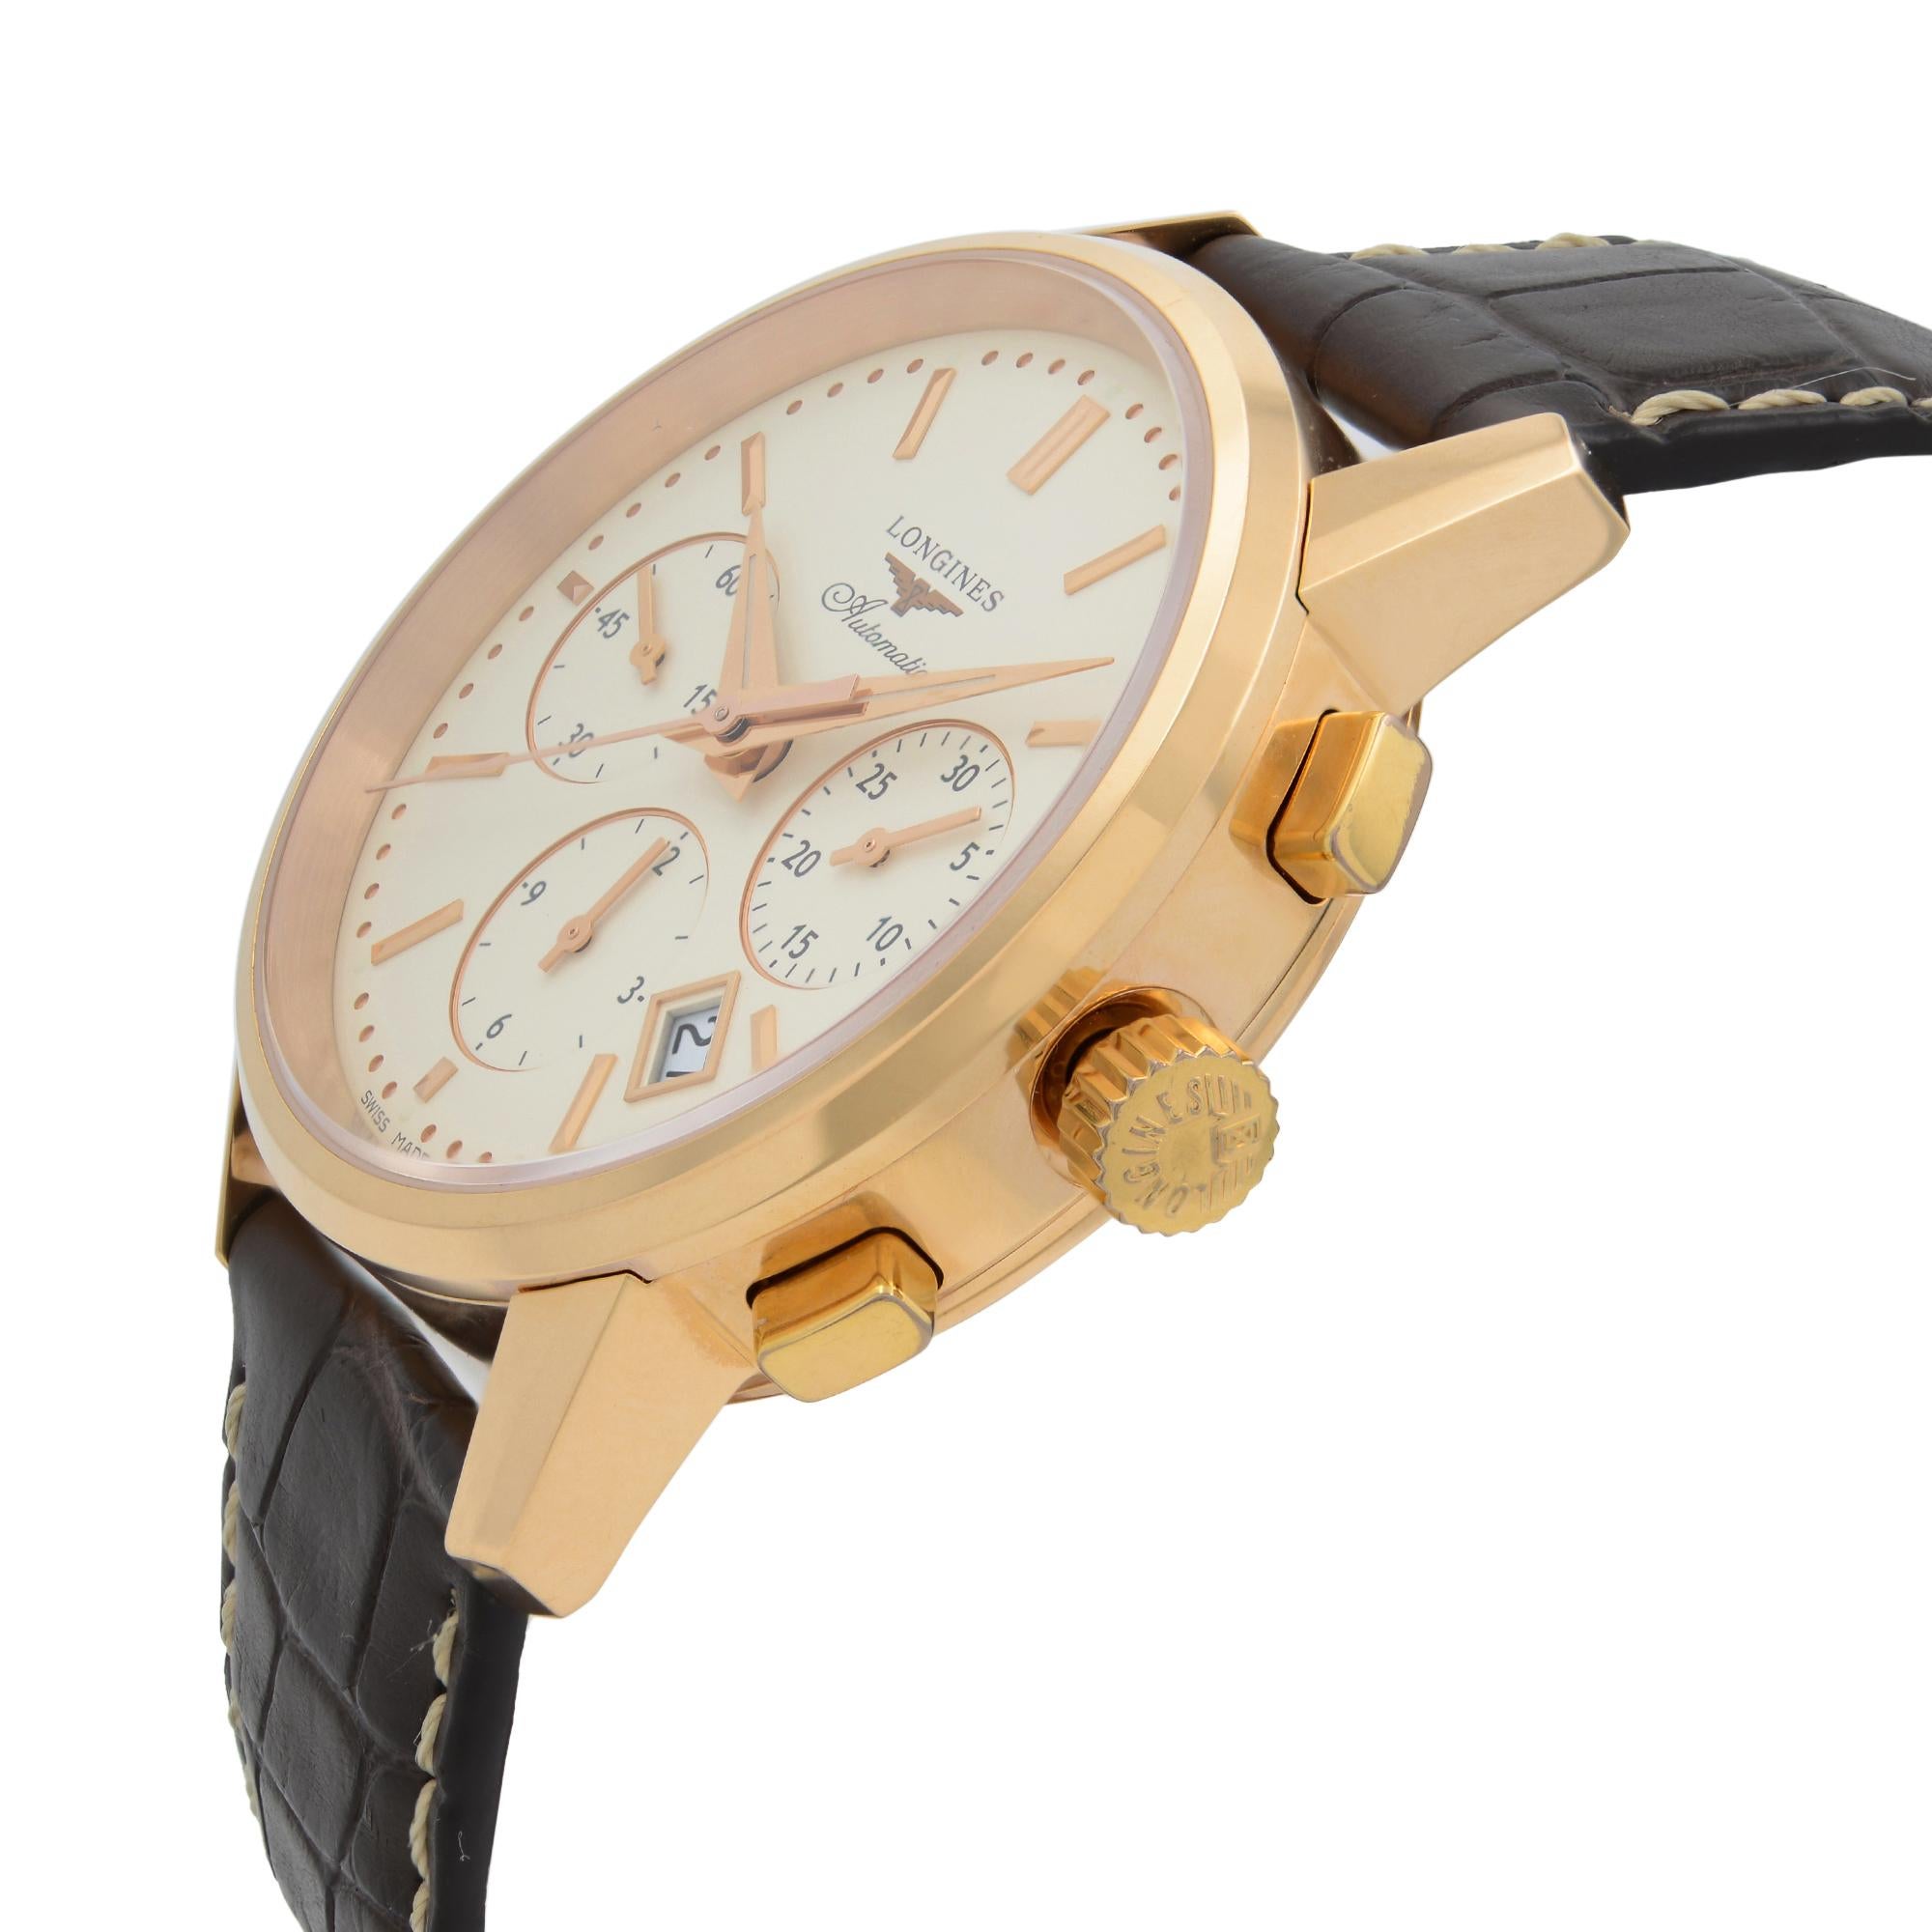  Longines Heritage Montre chronographe pour homme avec cadran en or rose 18 carats et cadran crème L2.749.8,72.2 Pour hommes 